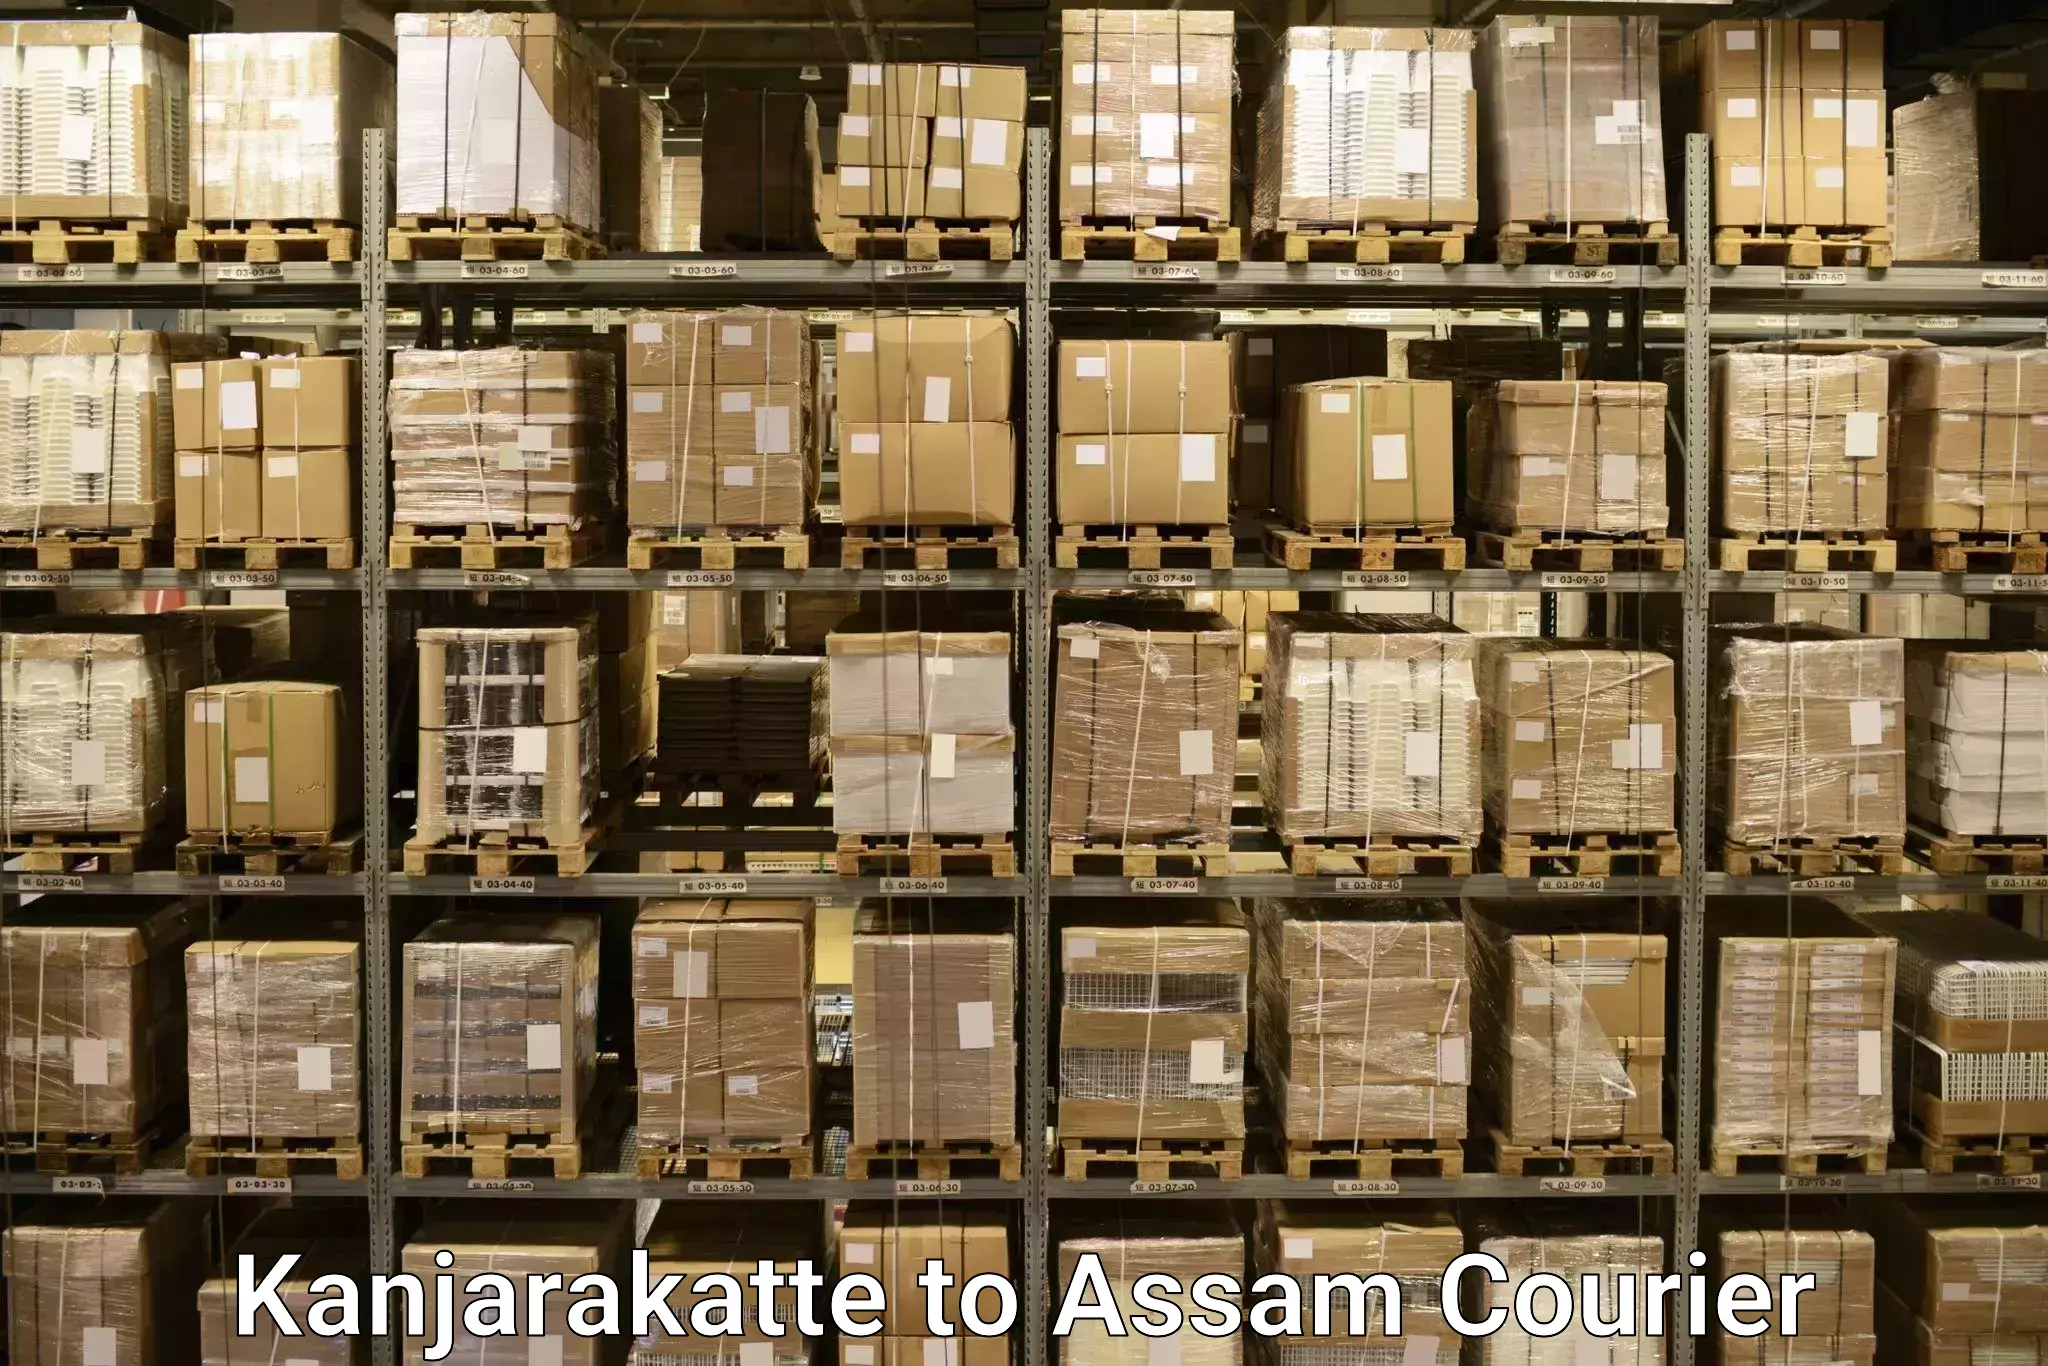 Baggage transport management Kanjarakatte to Assam